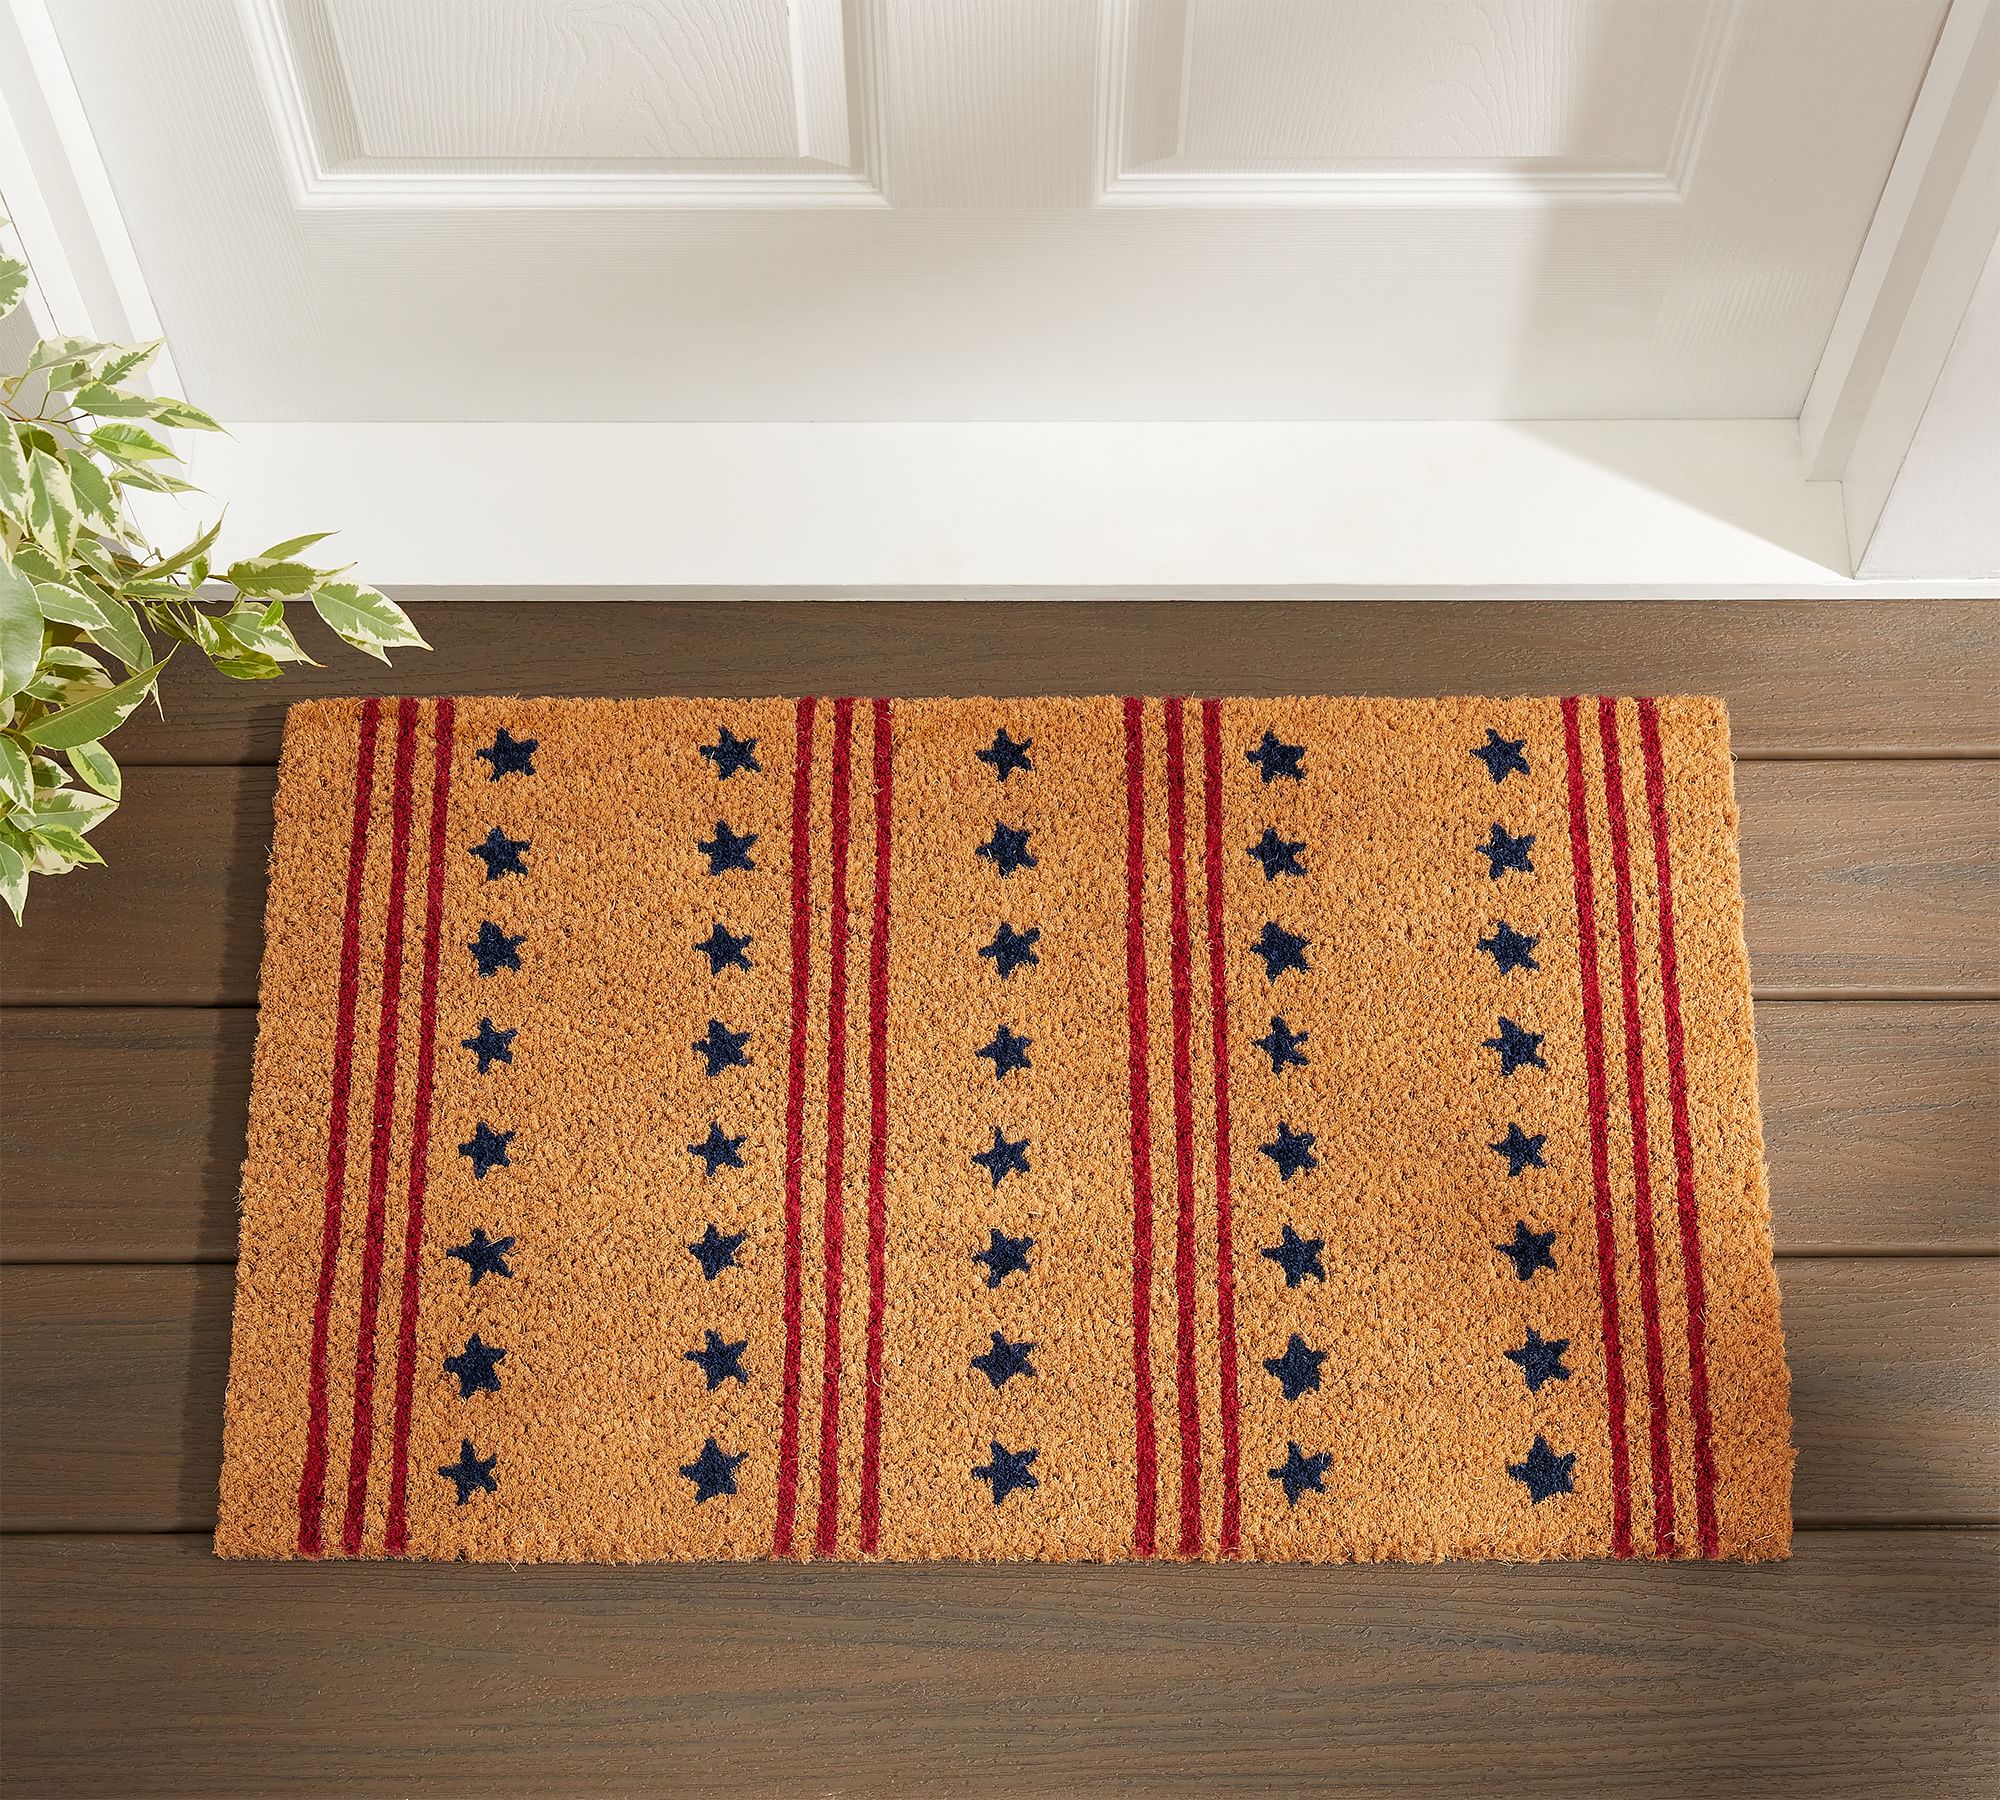 Stars & Stripes Doormat